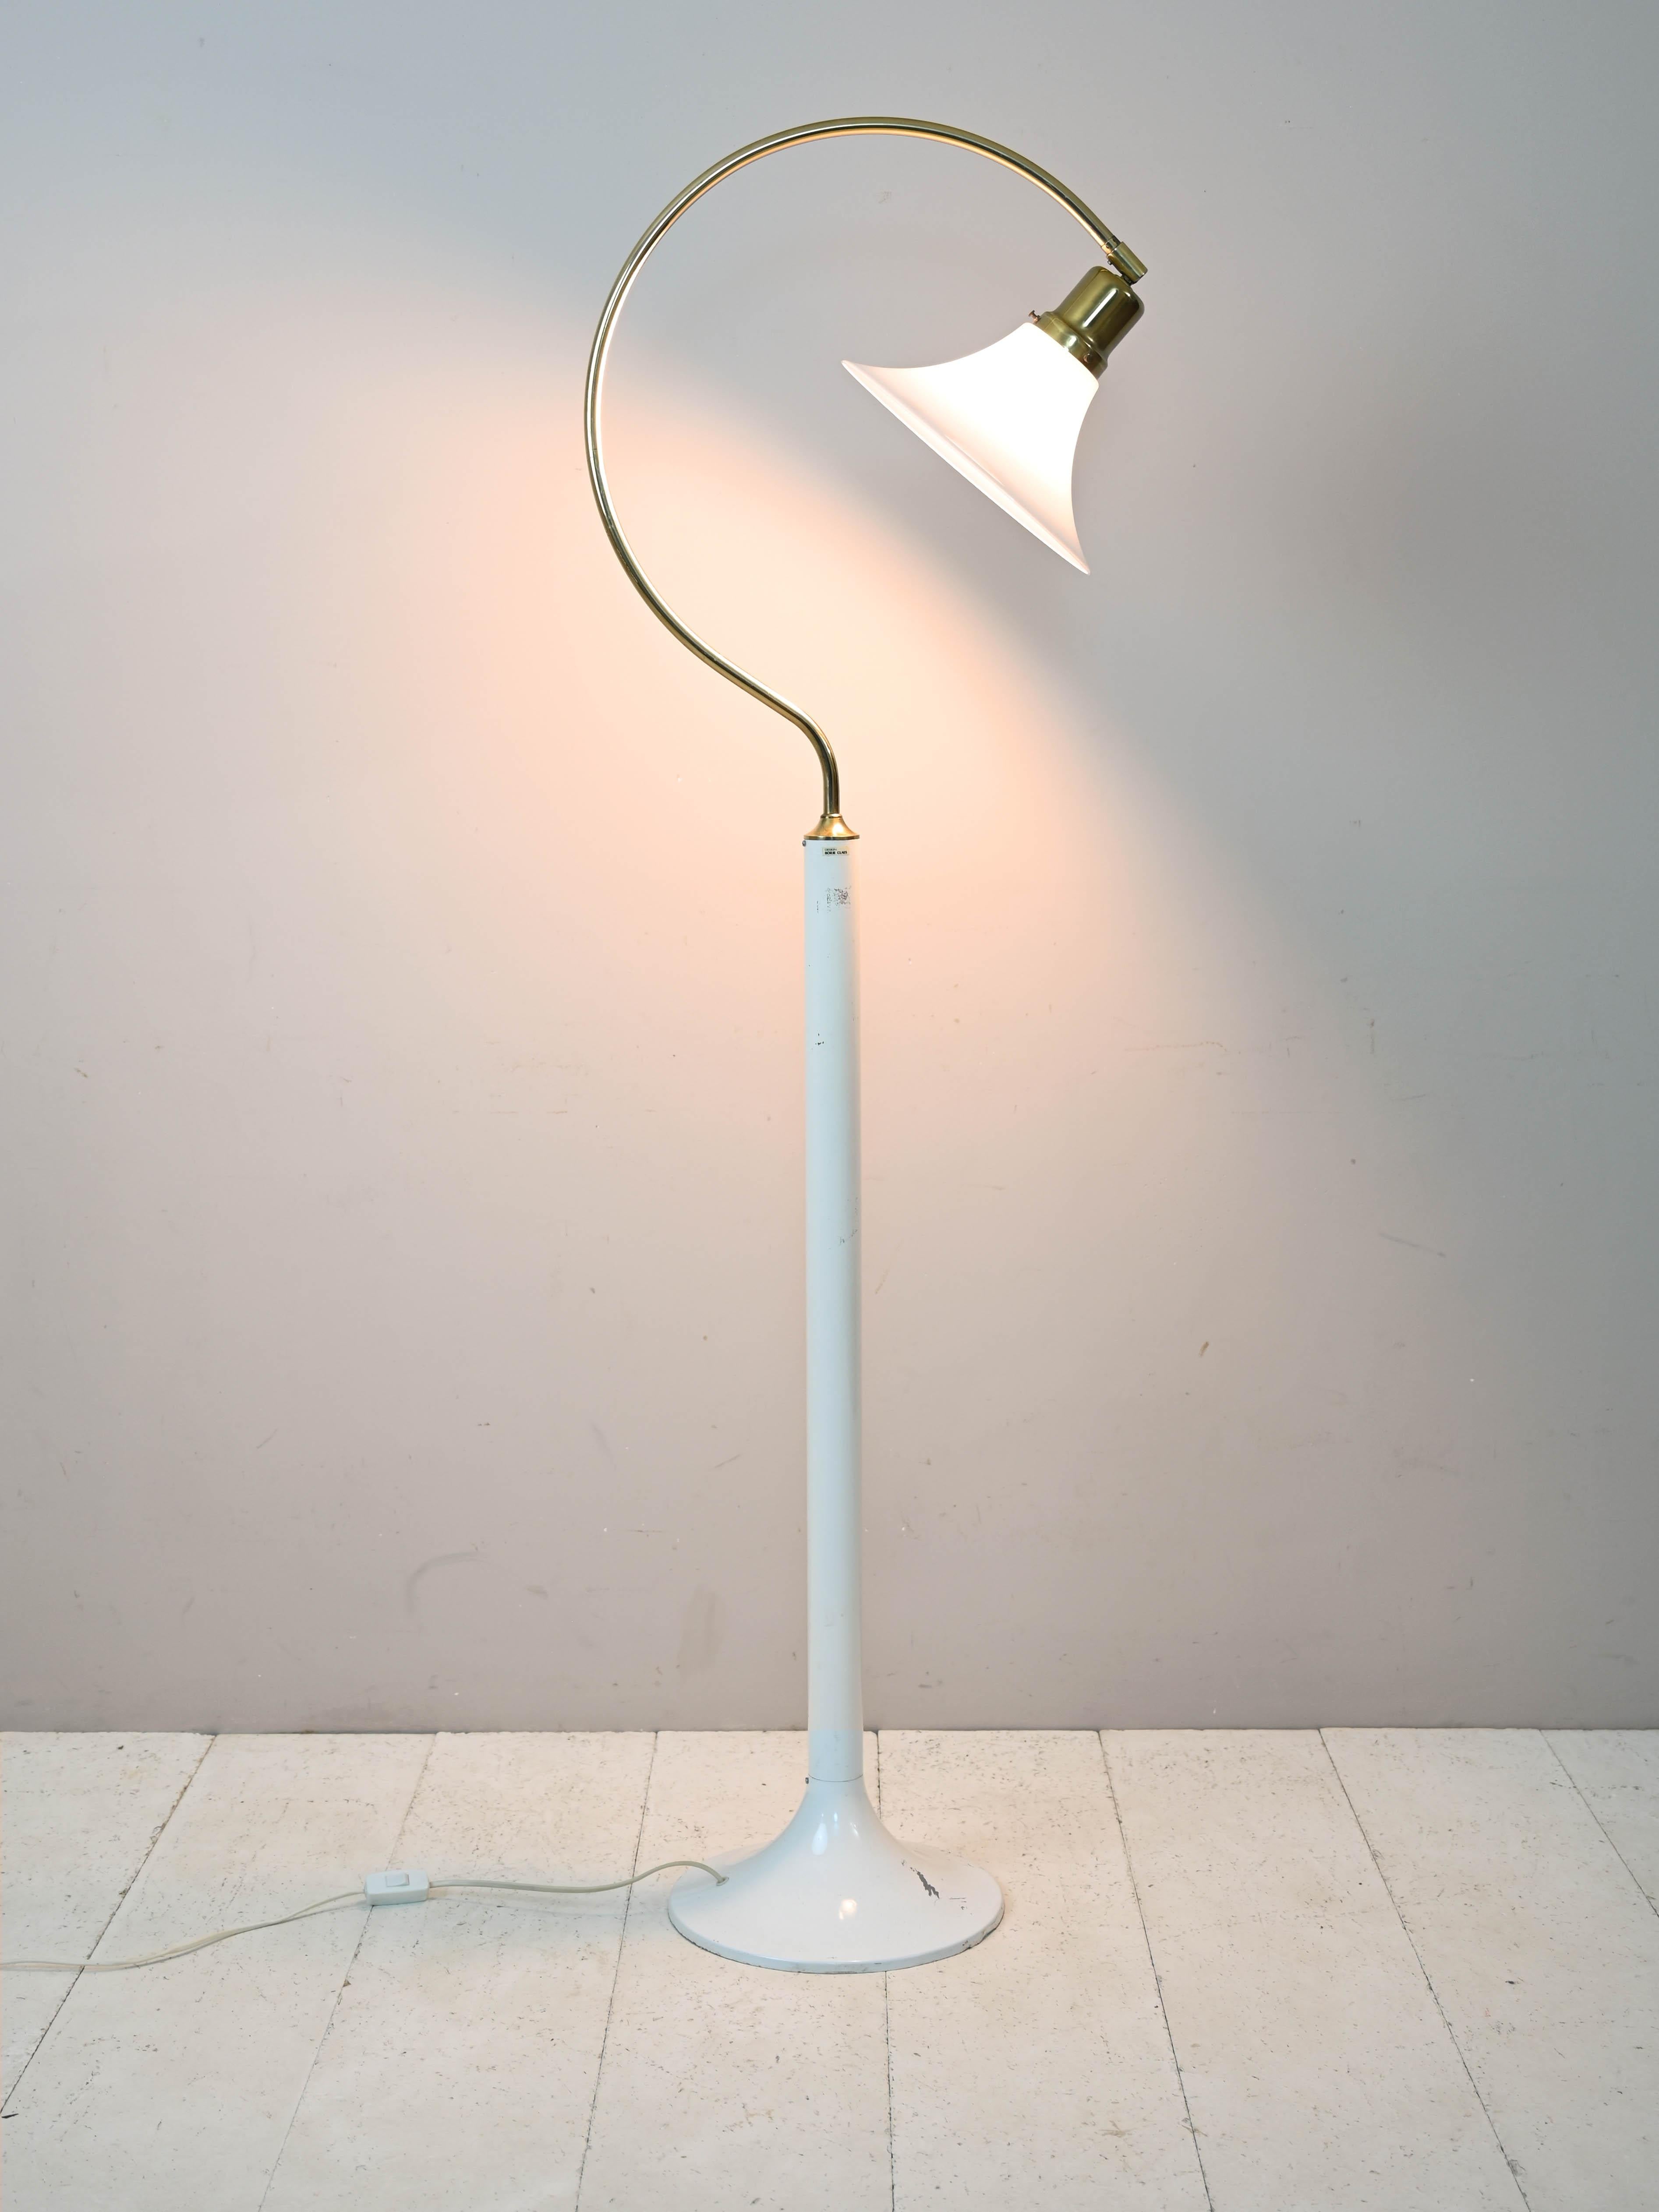 Eigenartige originelle skandinavische Lampe aus Kunststoff und Metall.

Dieses Möbelstück zeichnet sich durch die originelle Form des Stiels aus, der am Ende die Form eines C annimmt und aus goldenem Metall besteht.
Der Hartplastikschirm ist weiß